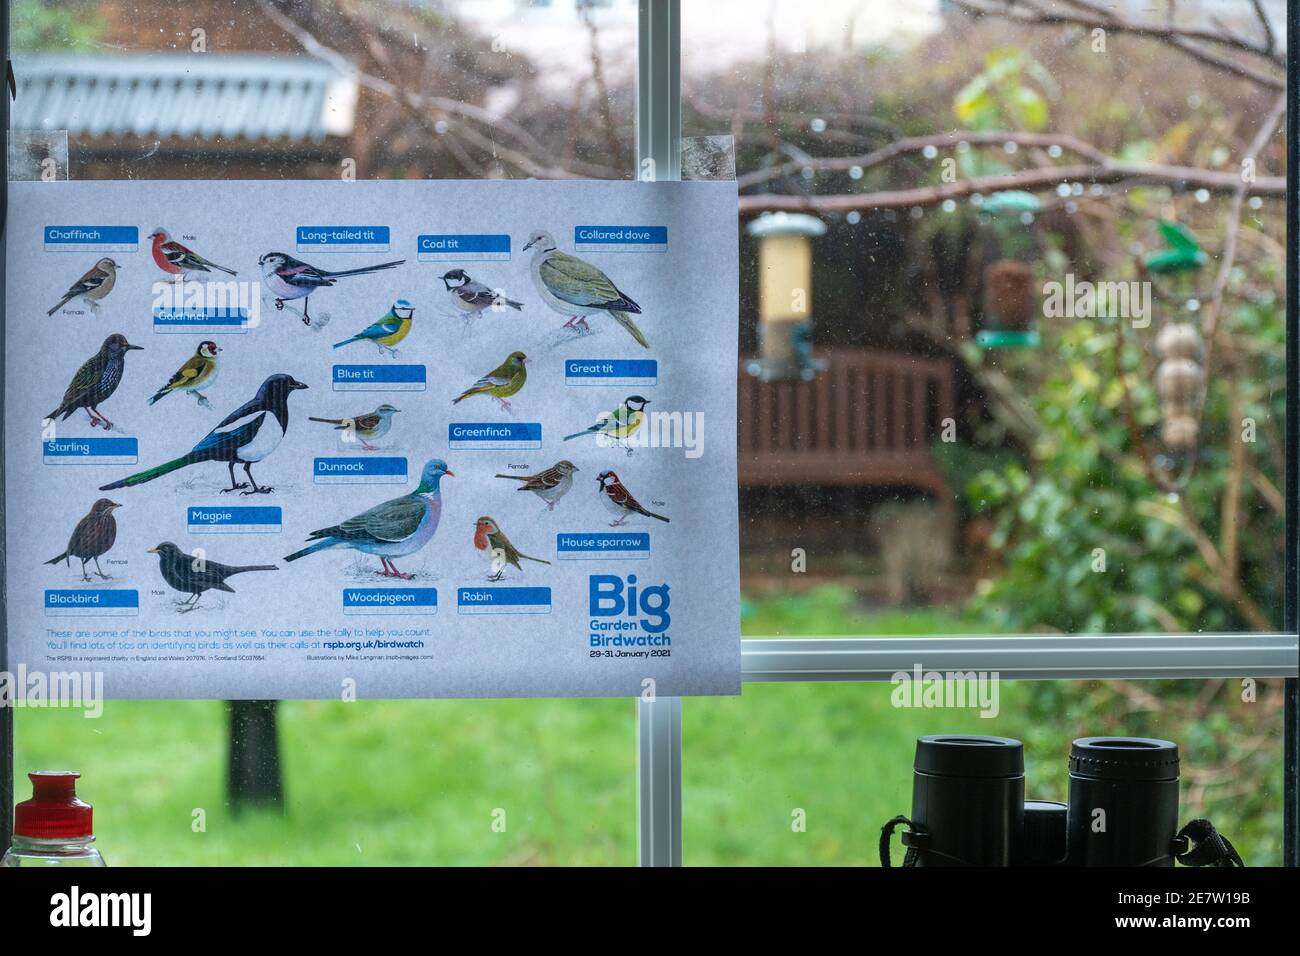 Participation à la montre d'oiseaux Big Garden avec une carte d'identification d'oiseau RSPB dans la fenêtre de la cuisine, Royaume-Uni, janvier 2021 Banque D'Images